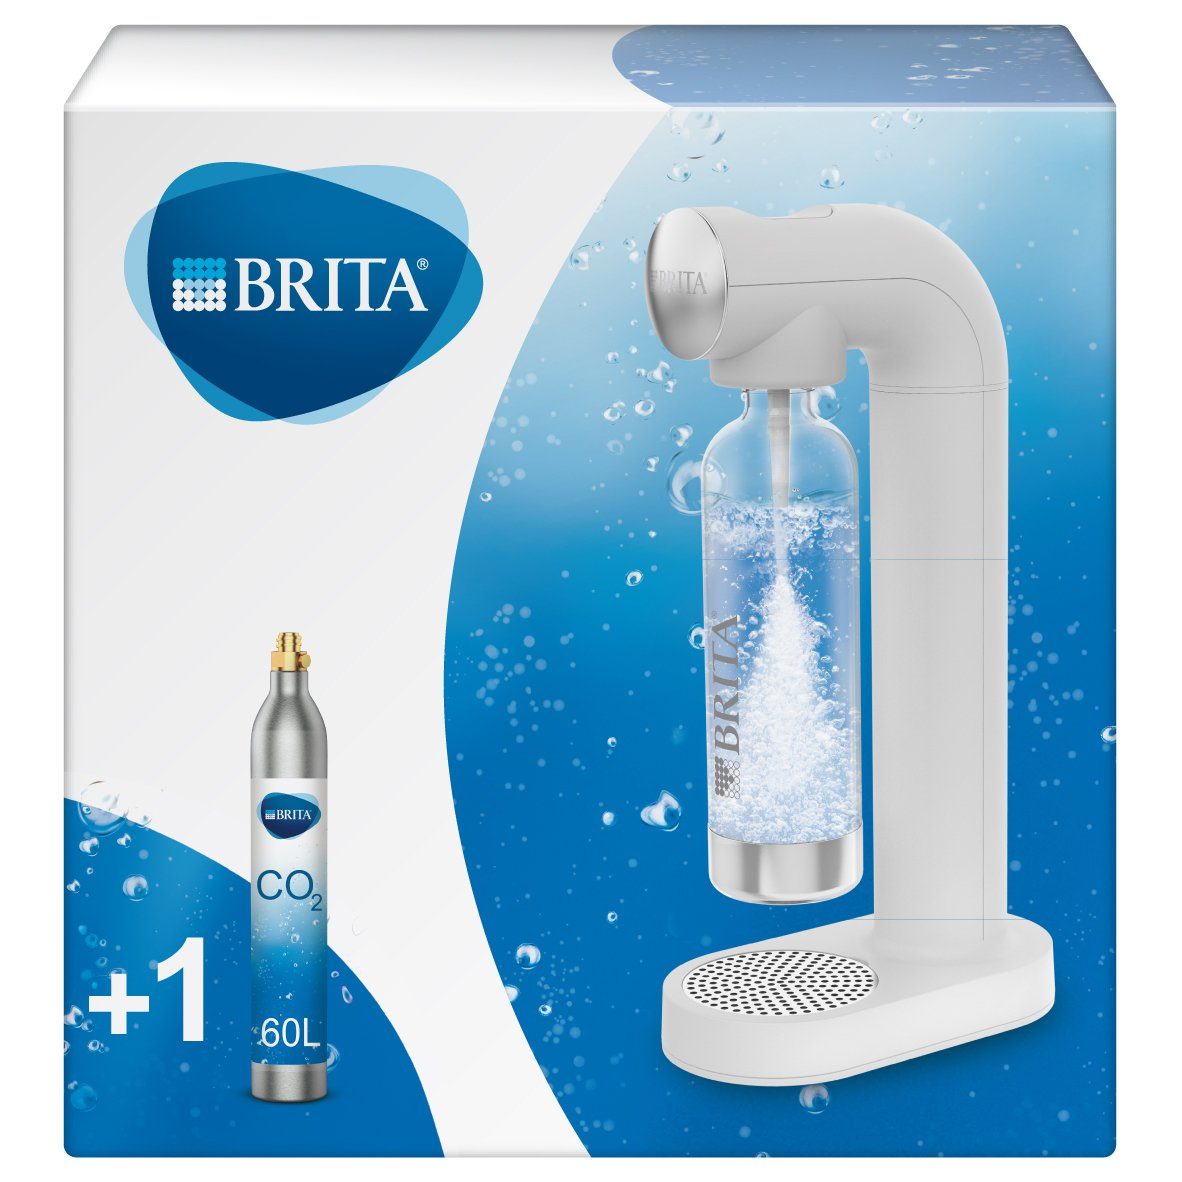 BRITA Wassersprudler sodaONE (weiss), (1x BRITA Wassersprudler inkl. 1x CO2-Zylinder & 1x Sprudlerflasche), inkl. 1 PET-Flasche und 1 CO2-Zylinder